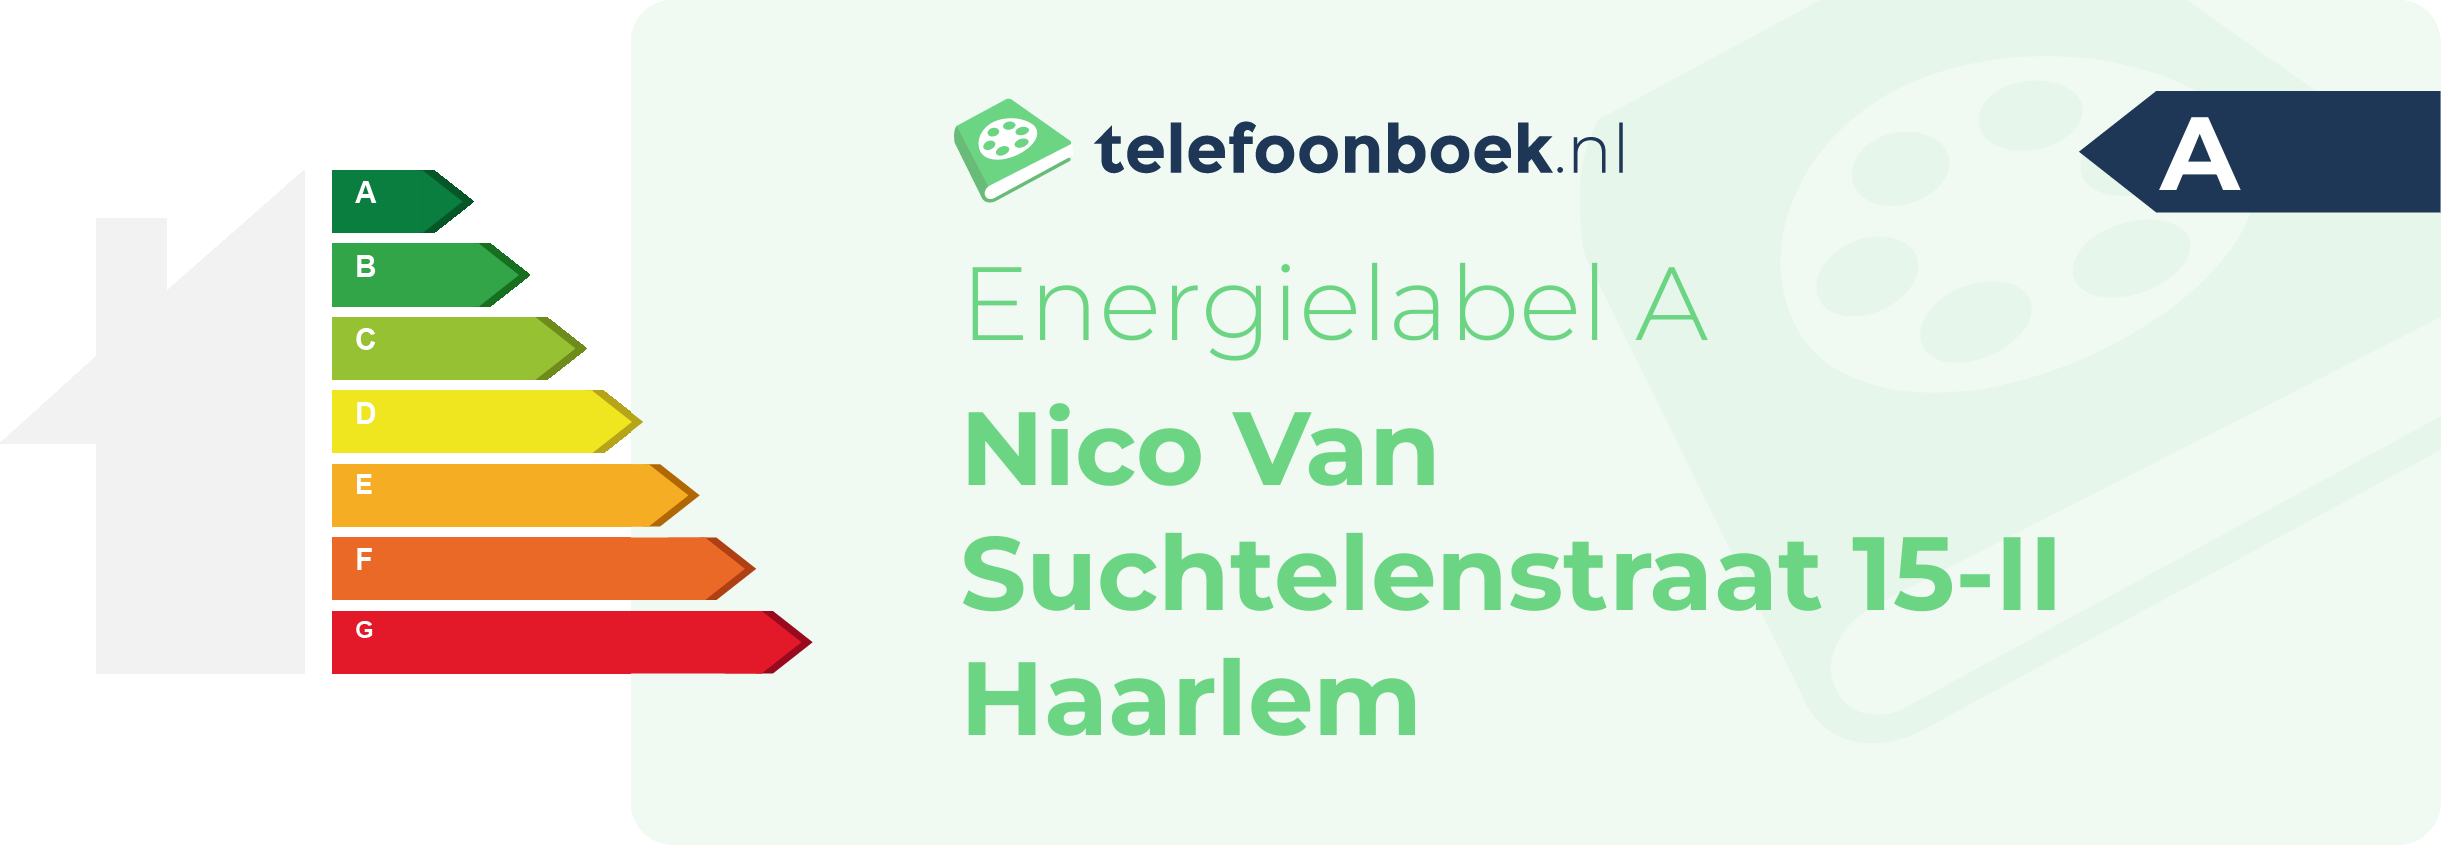 Energielabel Nico Van Suchtelenstraat 15-II Haarlem